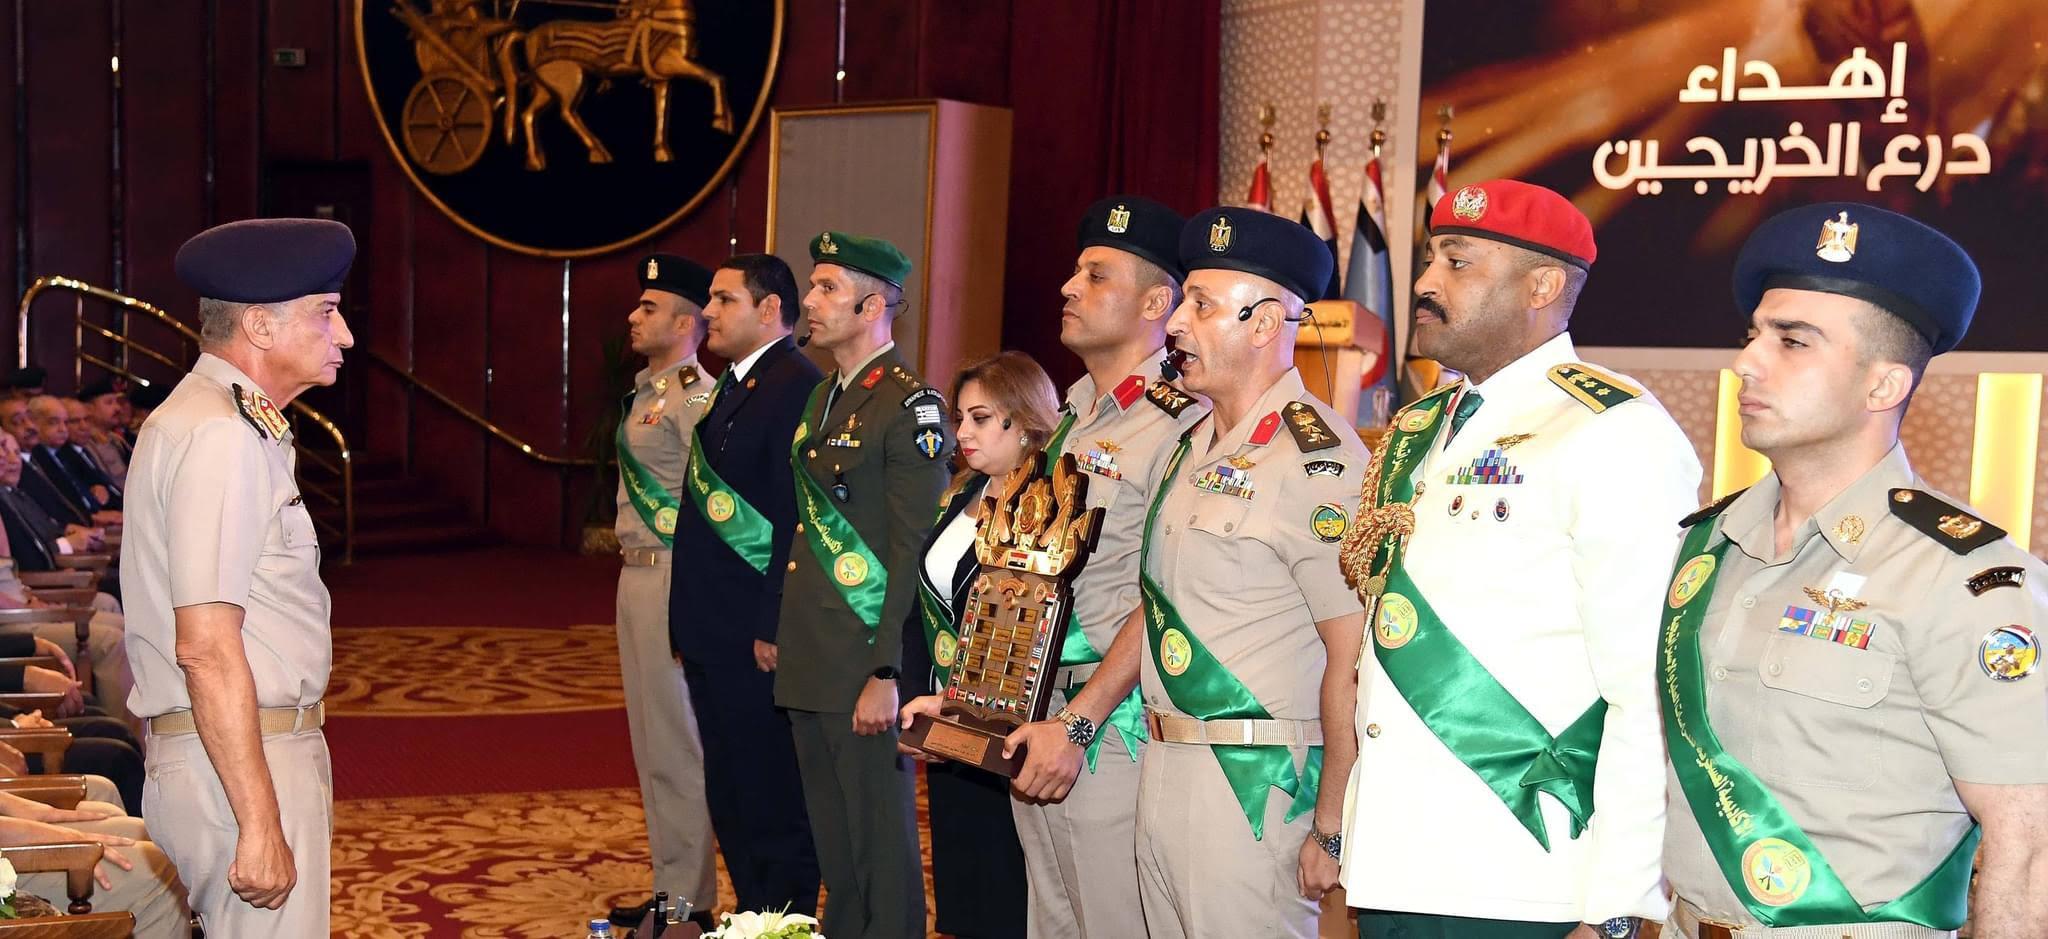  القائد العام للقوات المسلحة يشهد تخرج دورات جديدة من دارسى الأكاديمية